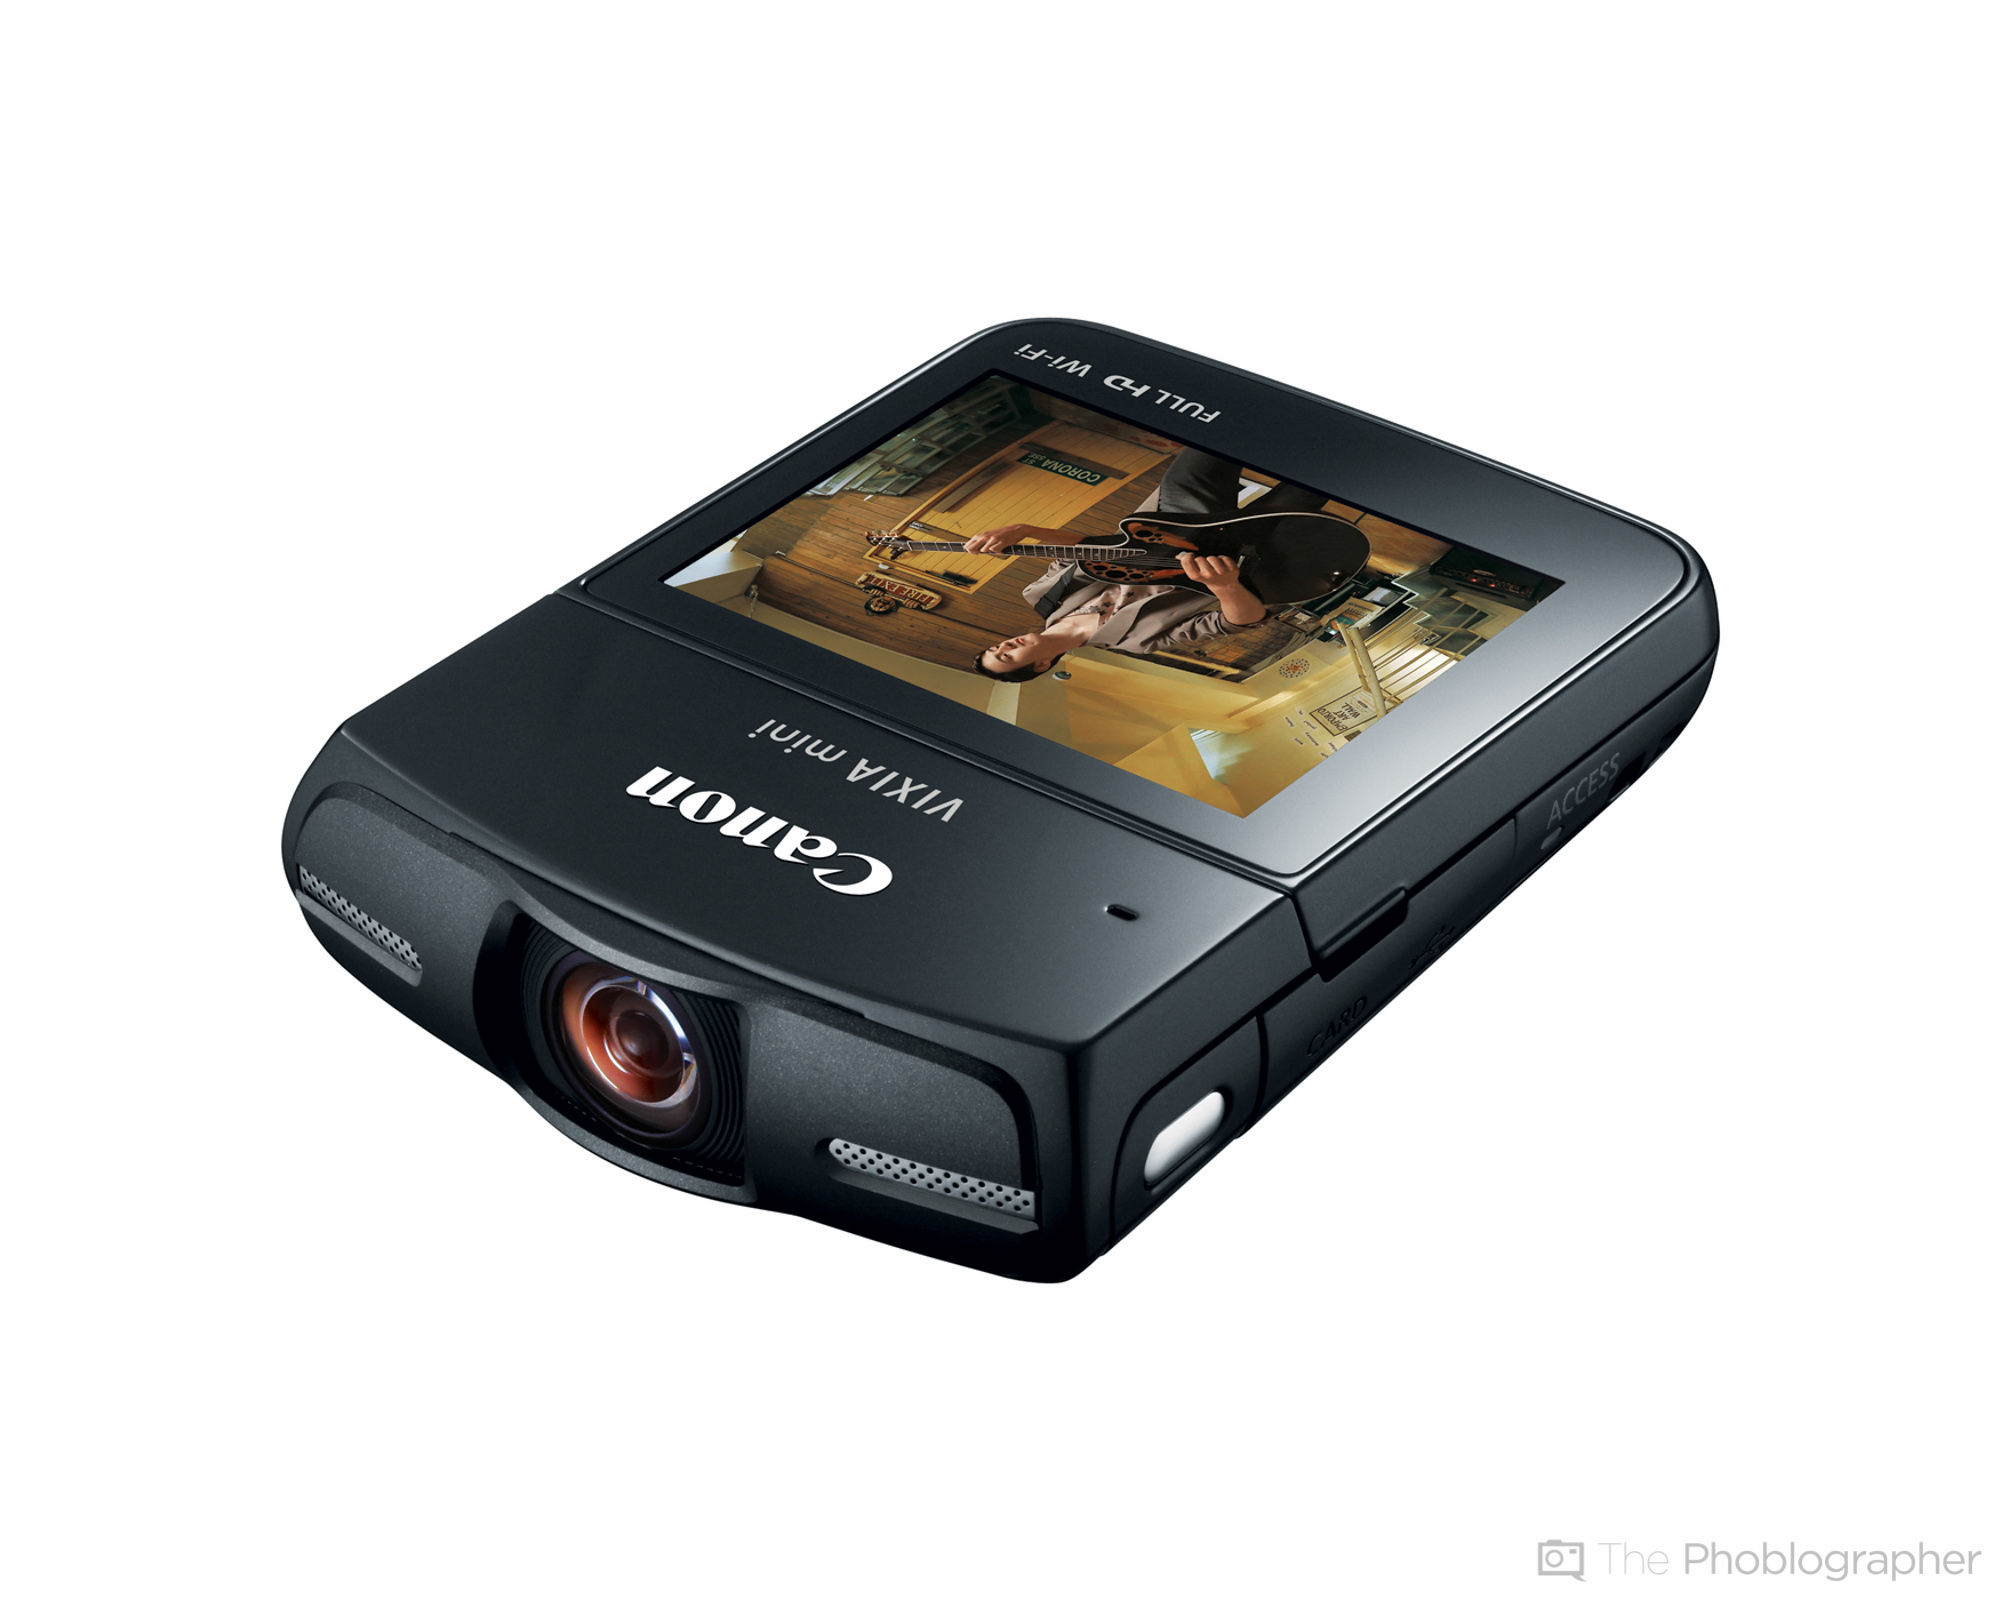 Canon's New VIXIA Mini Compact Person Camcorder With a Fisheye